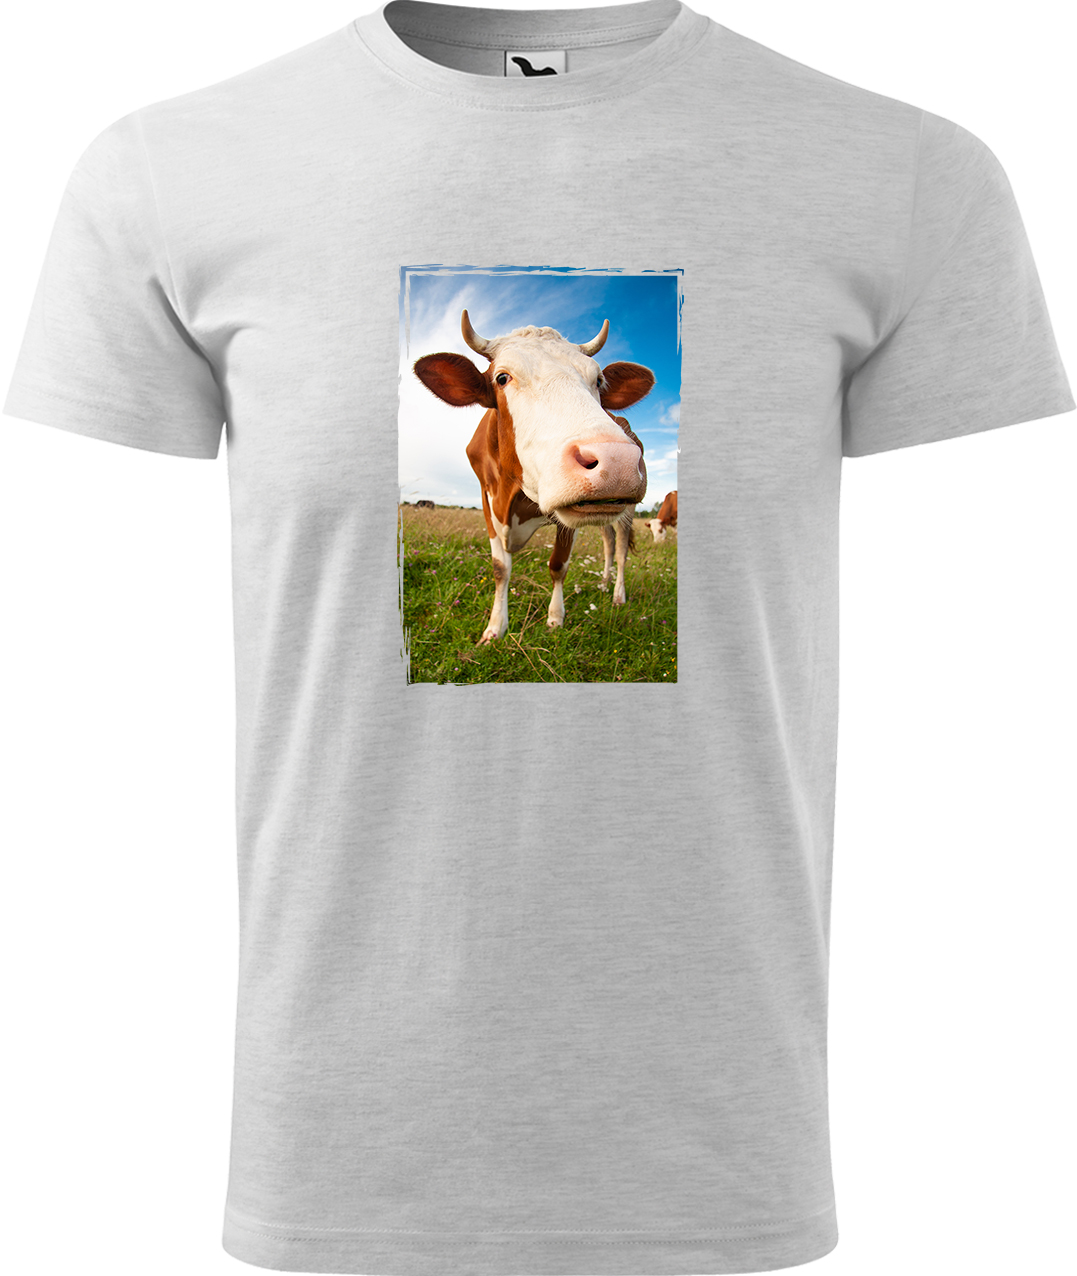 Pánské tričko s krávou - Na pastvě Velikost: 3XL, Barva: Světle šedý melír (03), Střih: pánský